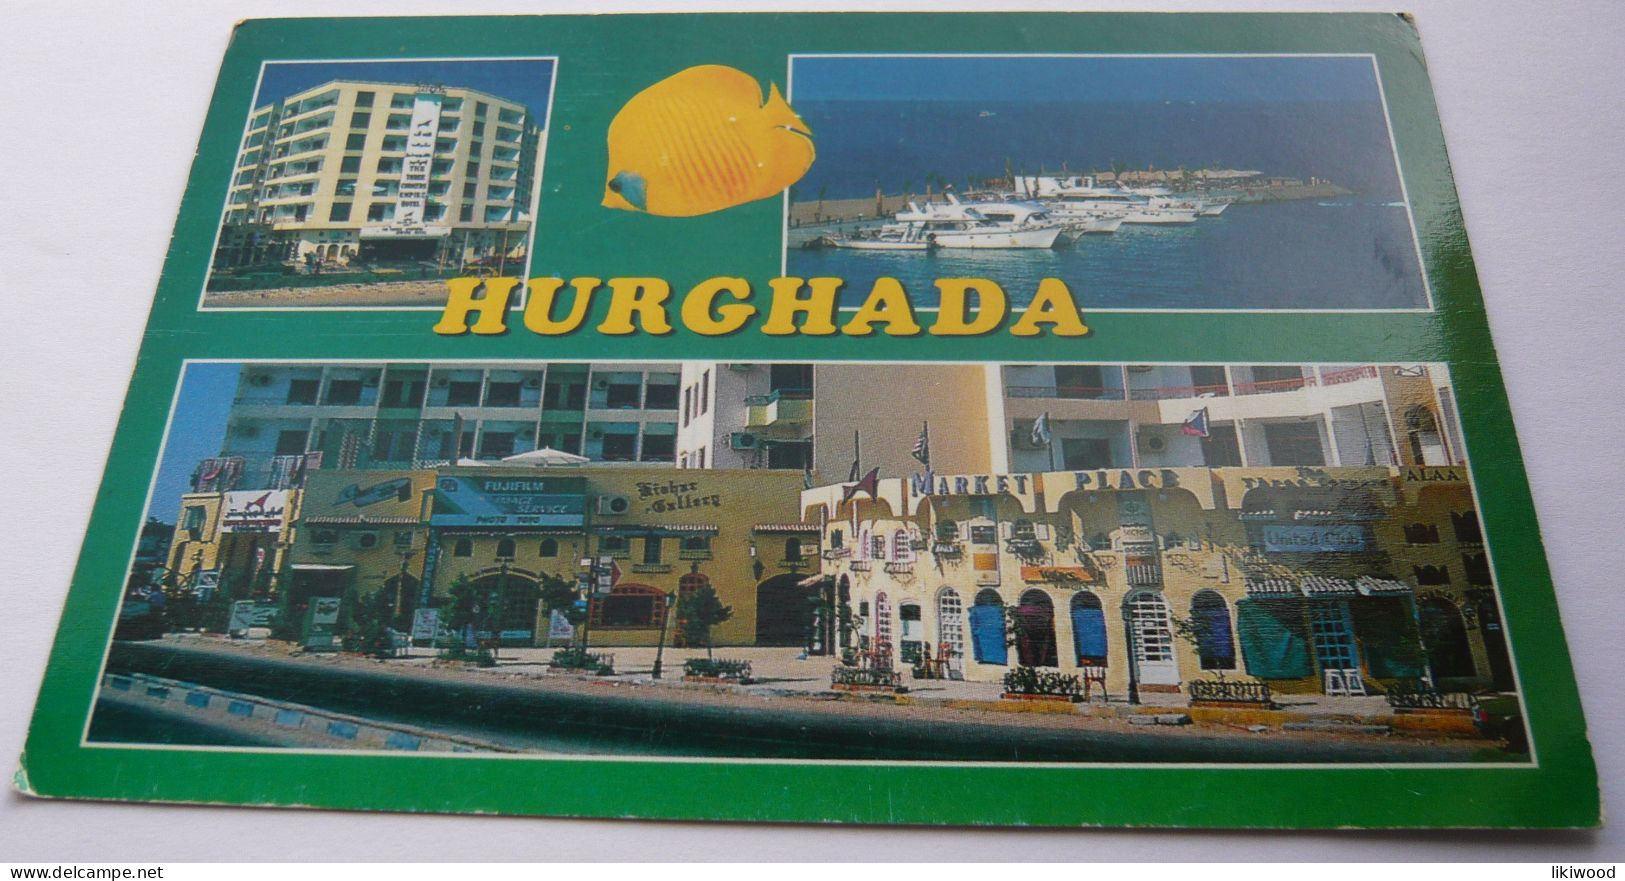 Hurghada - Hurghada